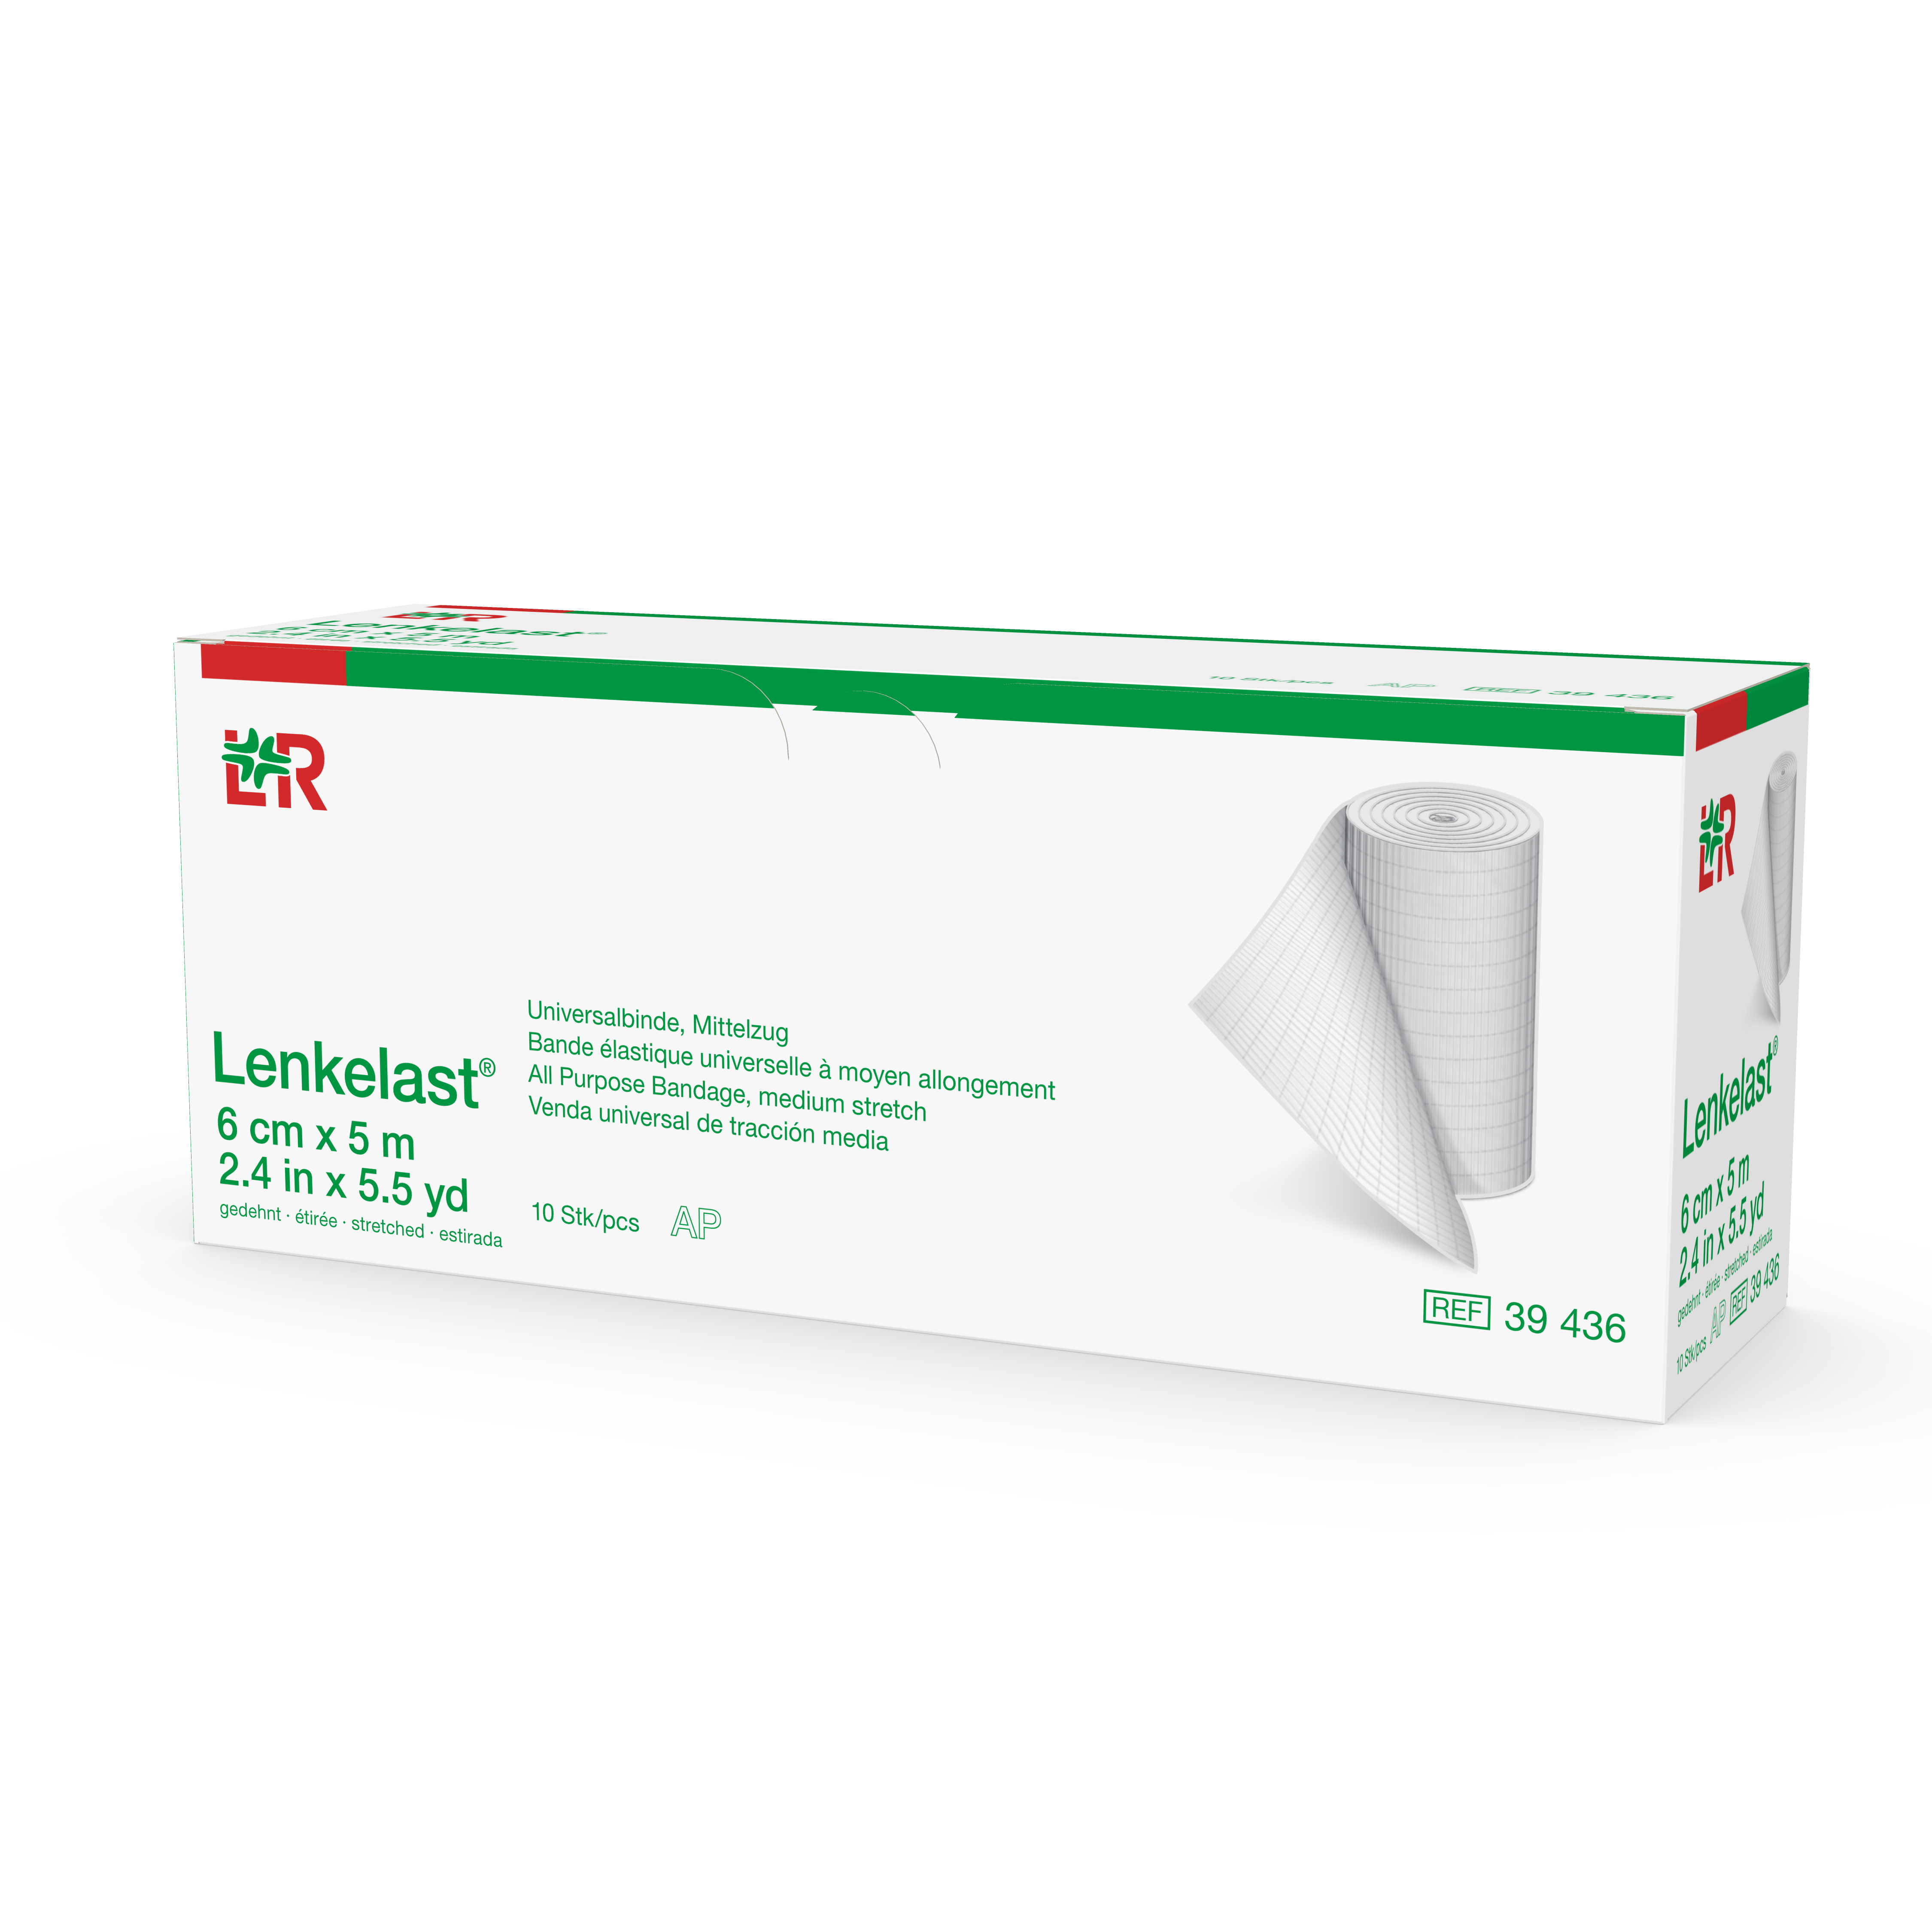 Lenkelast® - bandes à allongement modéré - 6 cm x 5 m - 1 pc